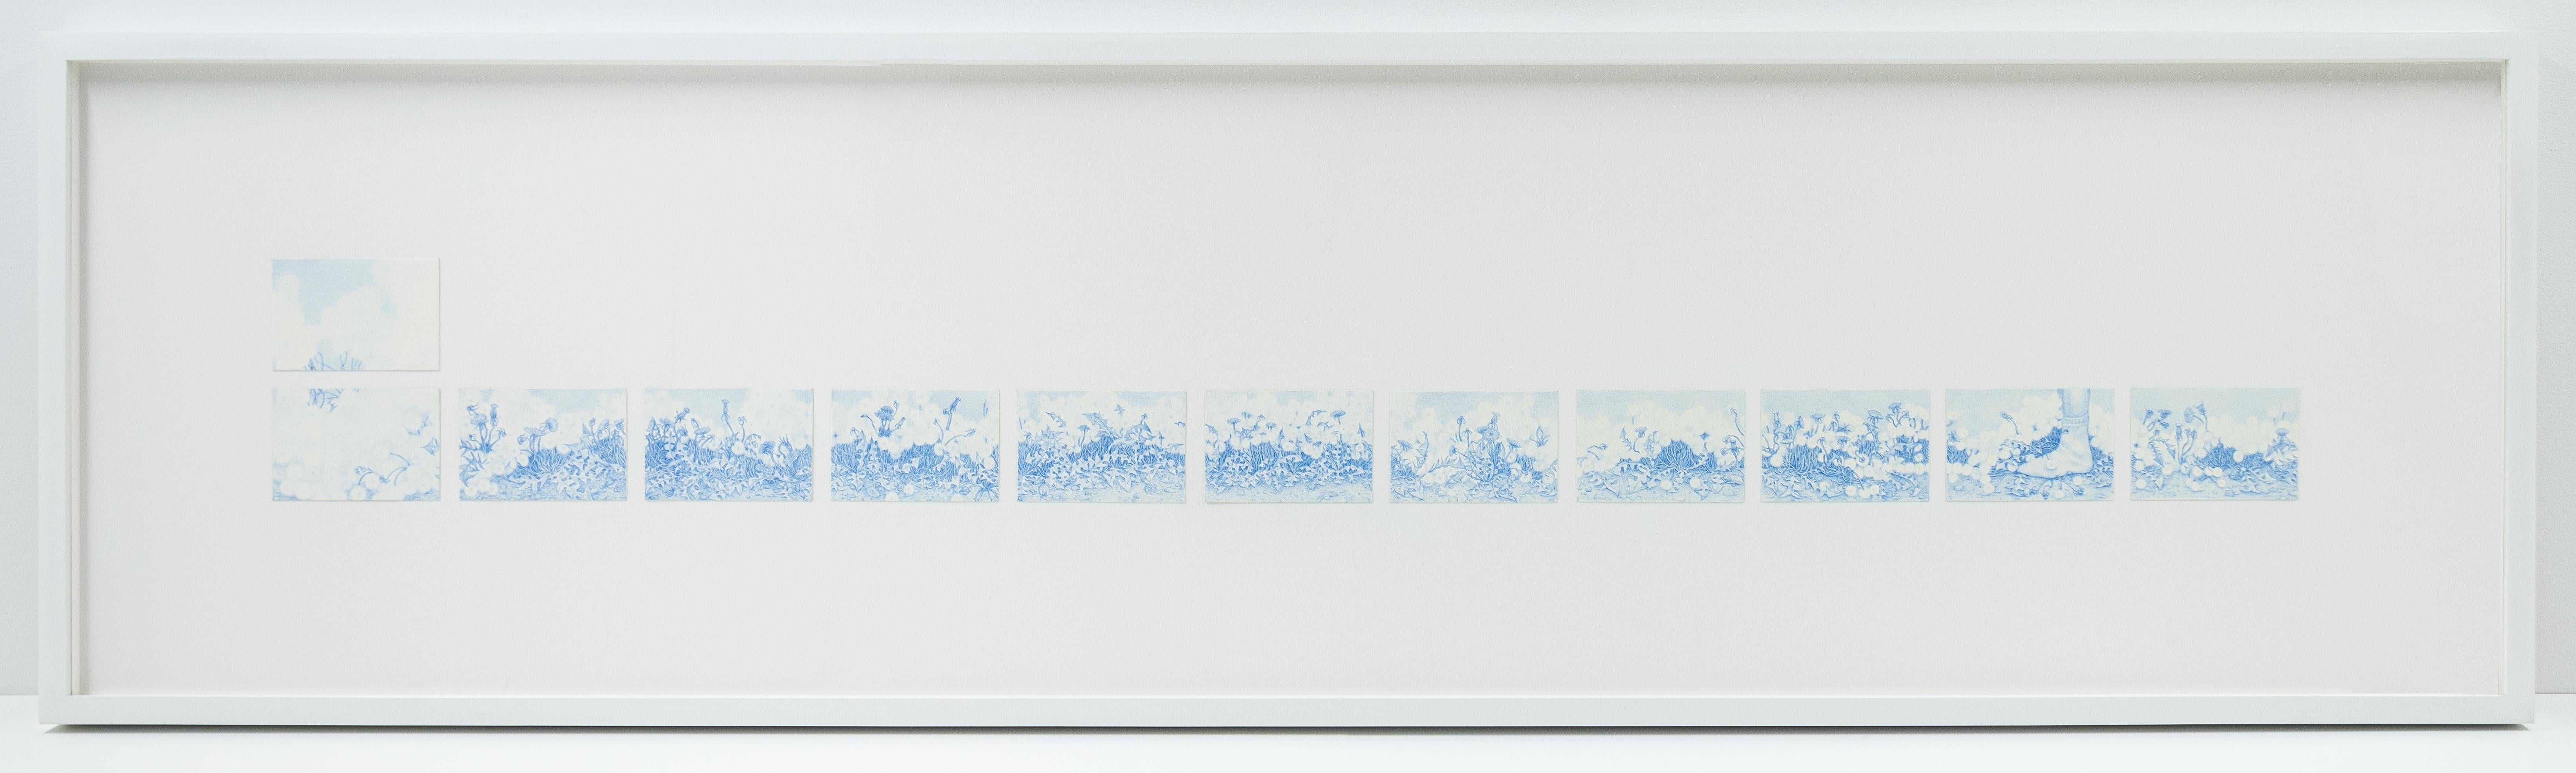 Dandelions Become Clouds (Unkraut stirbt nie) - Contemporary Art by Zachari Logan